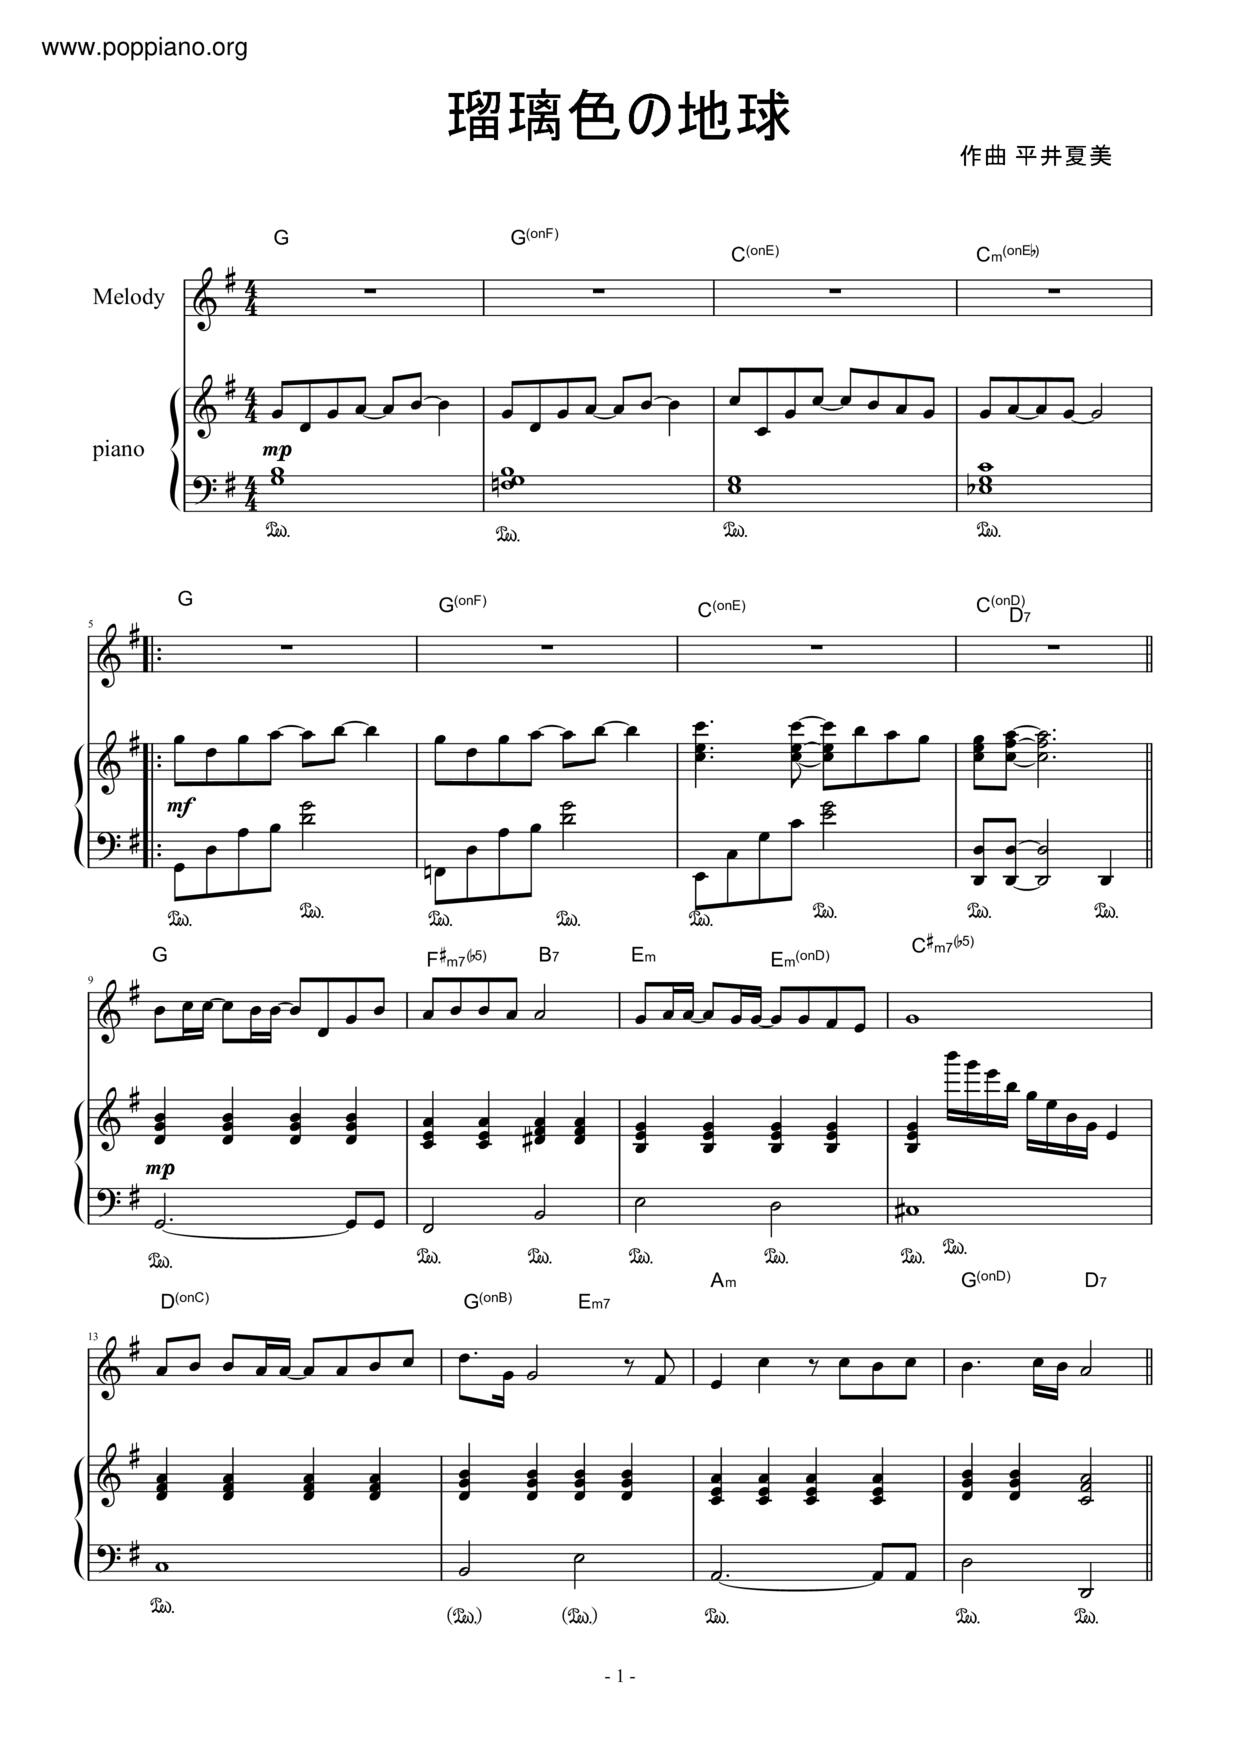 松田聖子 瑠璃色の地球 琴譜pdf 香港流行鋼琴協會琴譜下載